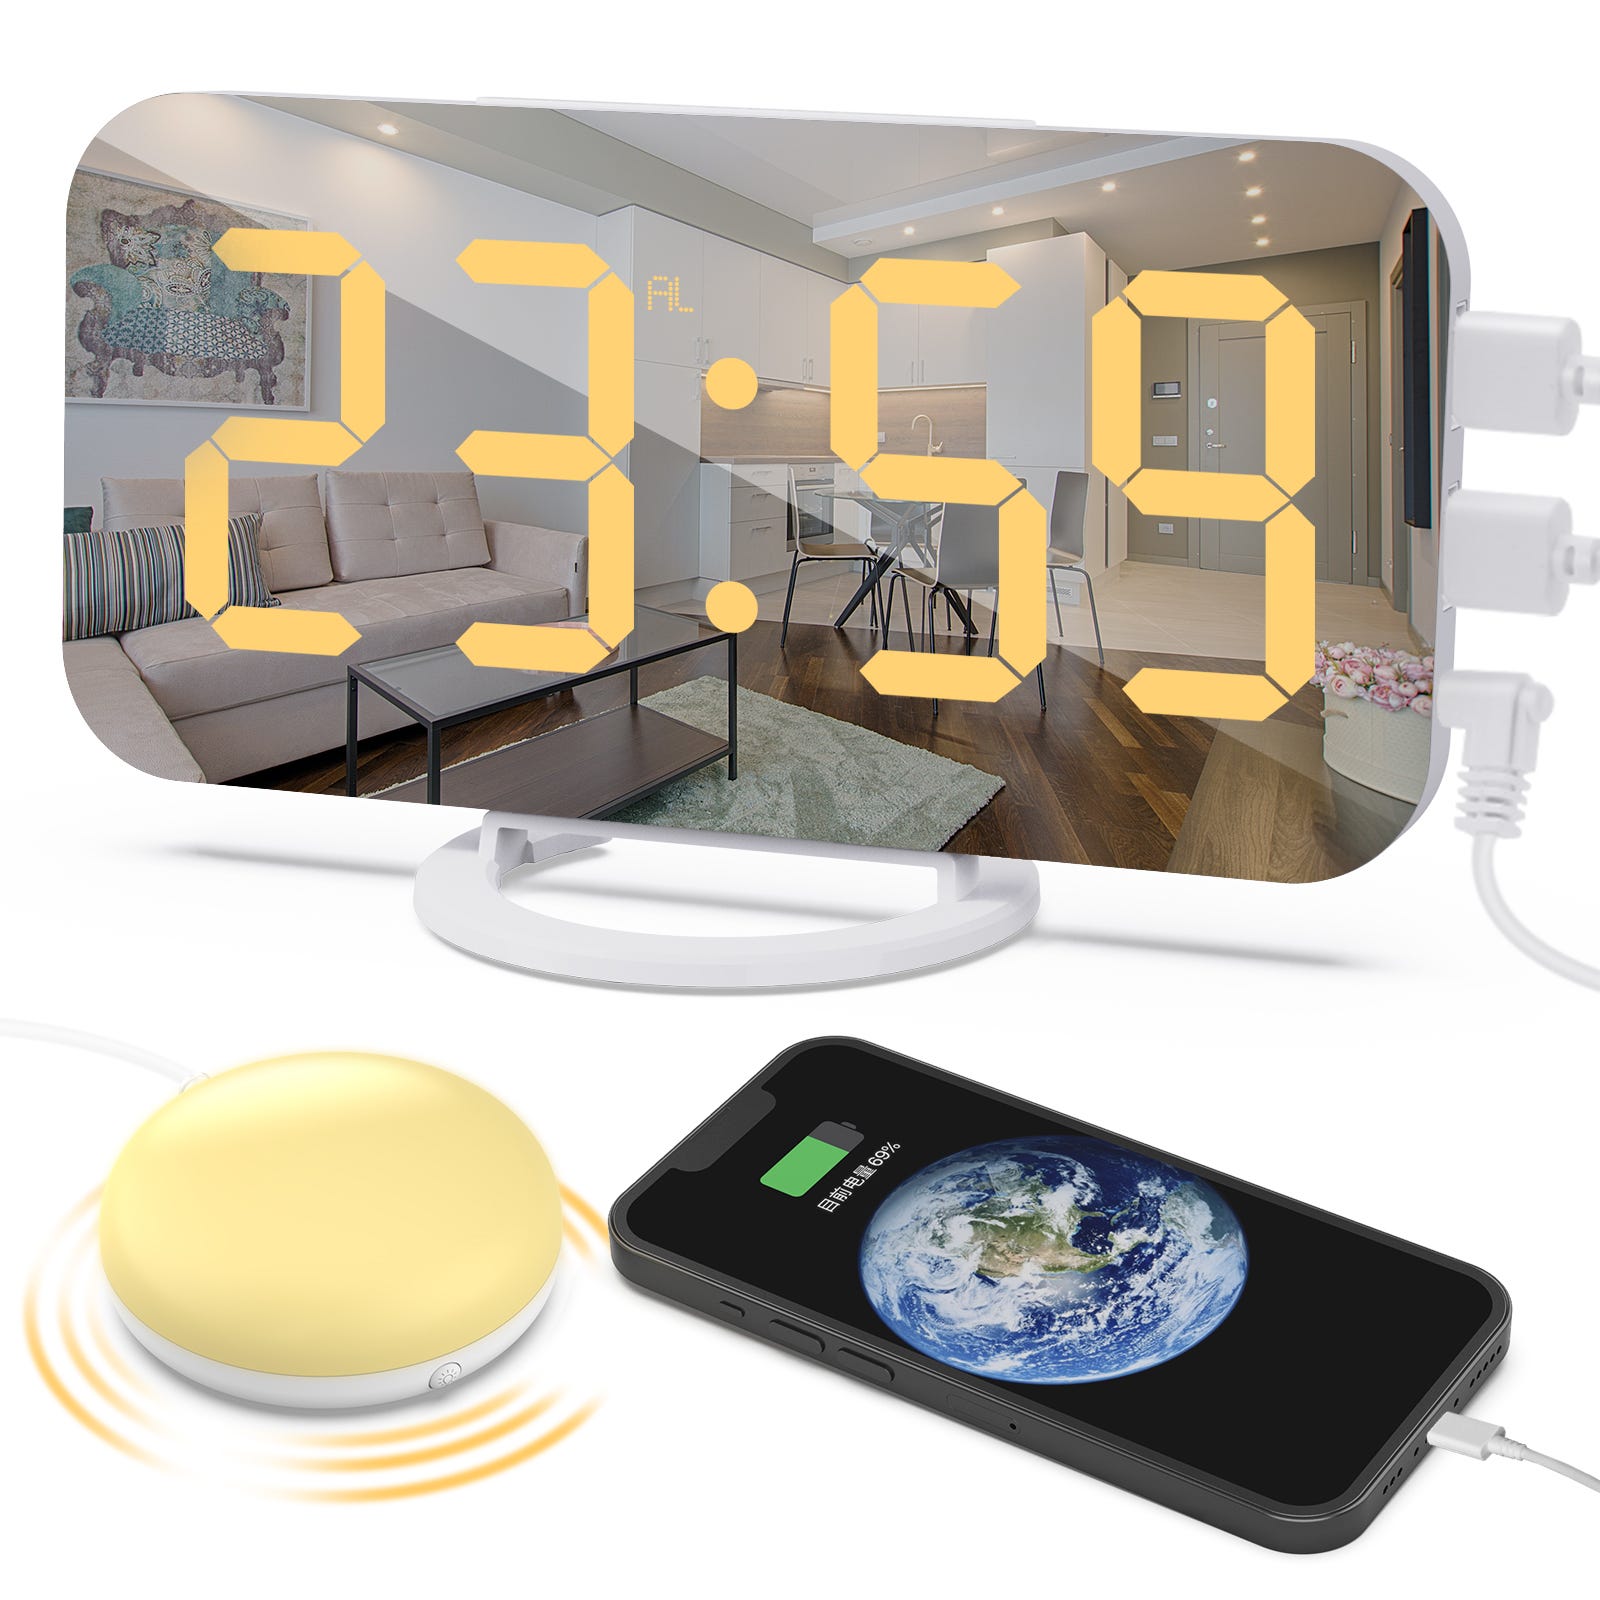 Réveil numérique avec shaker de lit, réveil vibrant très fort pour